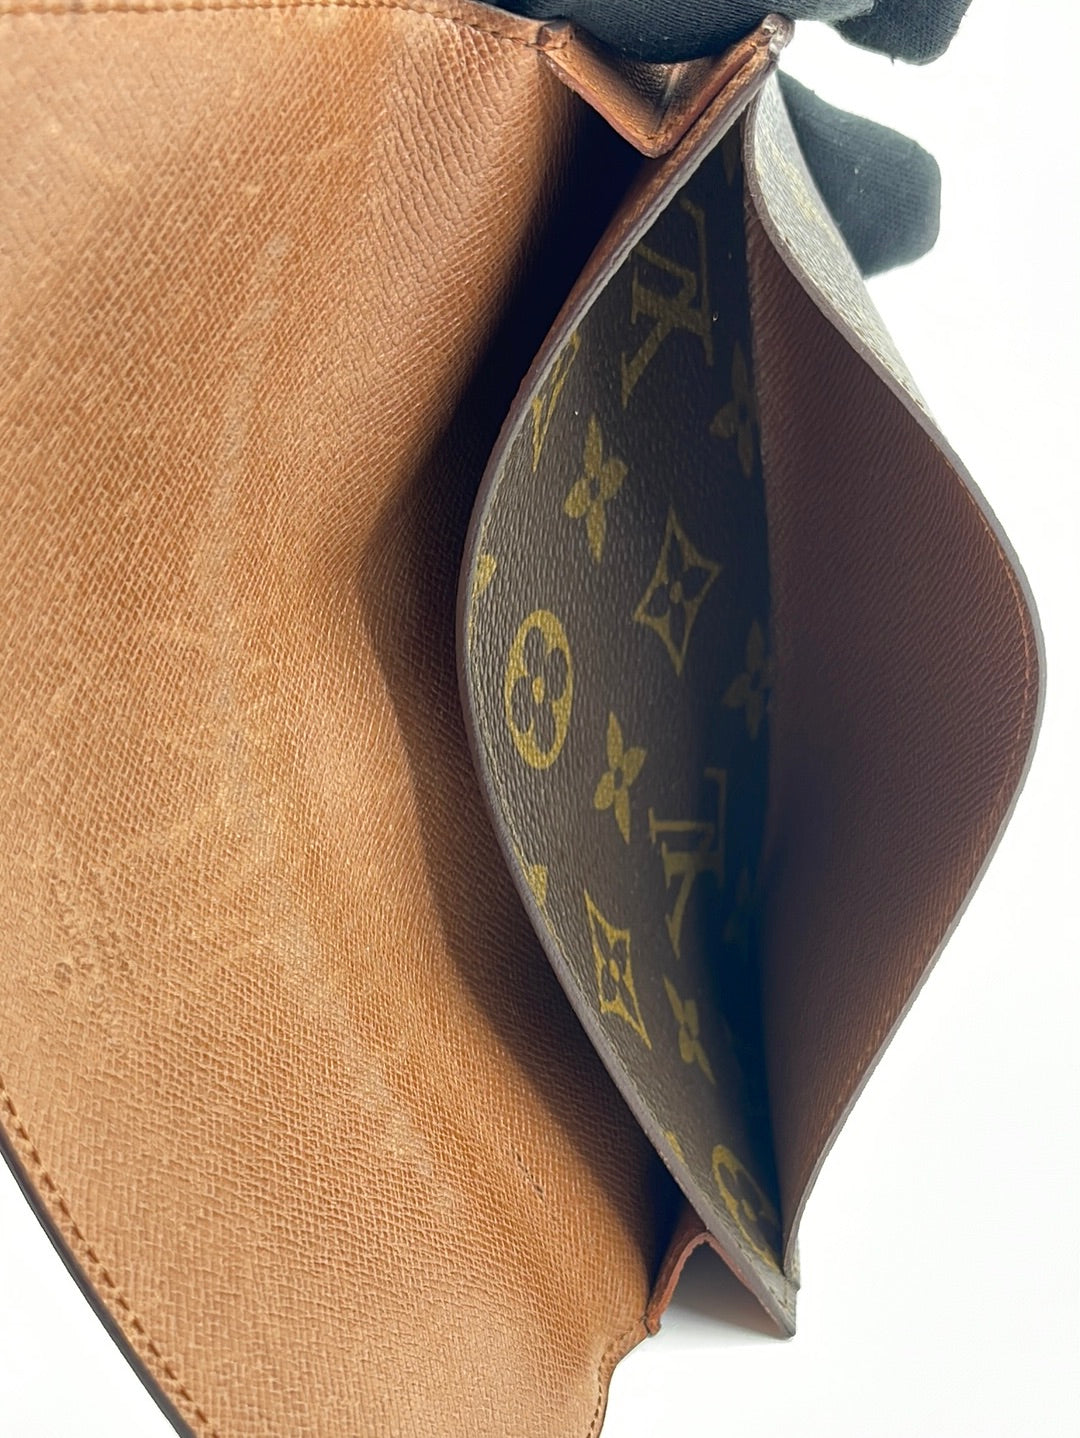 Louis Vuitton Monogram Long Bifold Check Wallet 226403